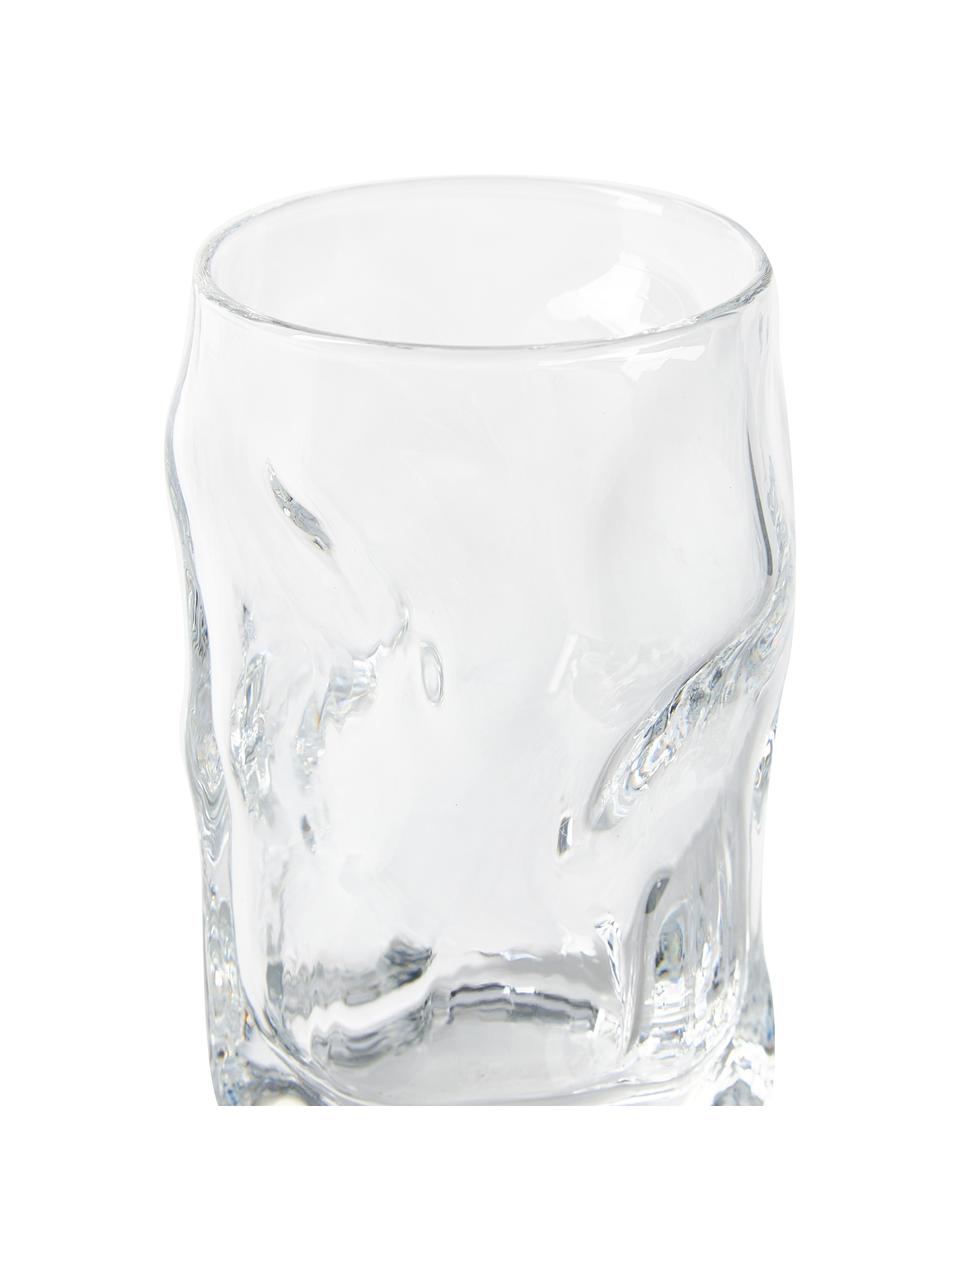 Set van 6 likeurglaasjes Sorgente in biologische vorm, Glas, Transparant, Ø 5 x H 8 cm, 70 ml